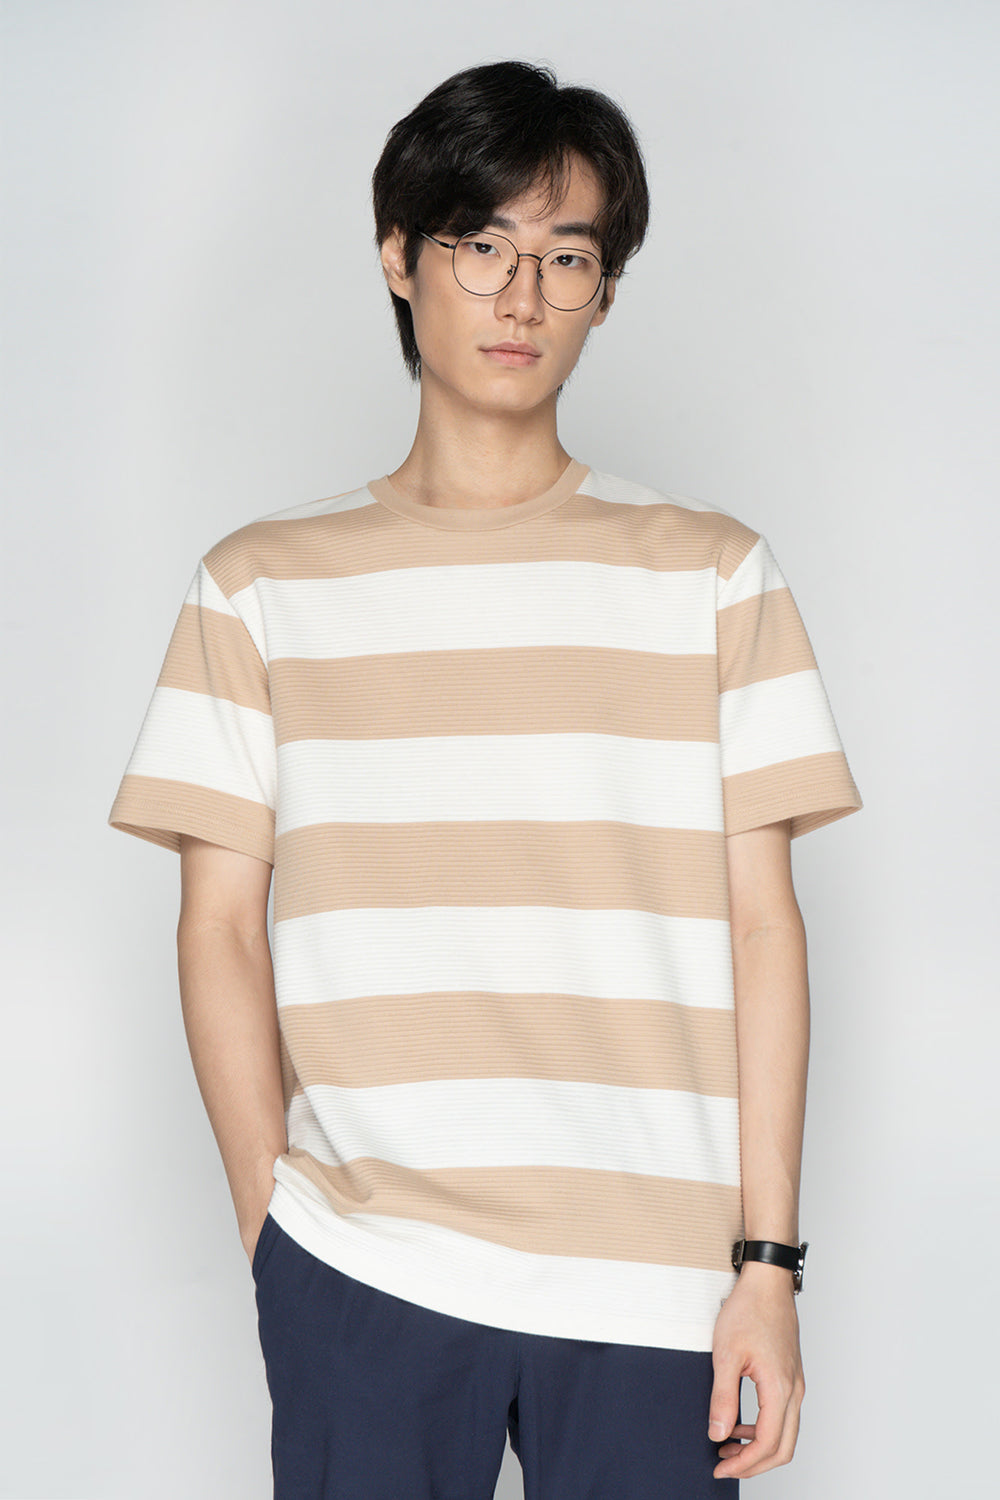 Dress Code Textured Striped T-Shirt